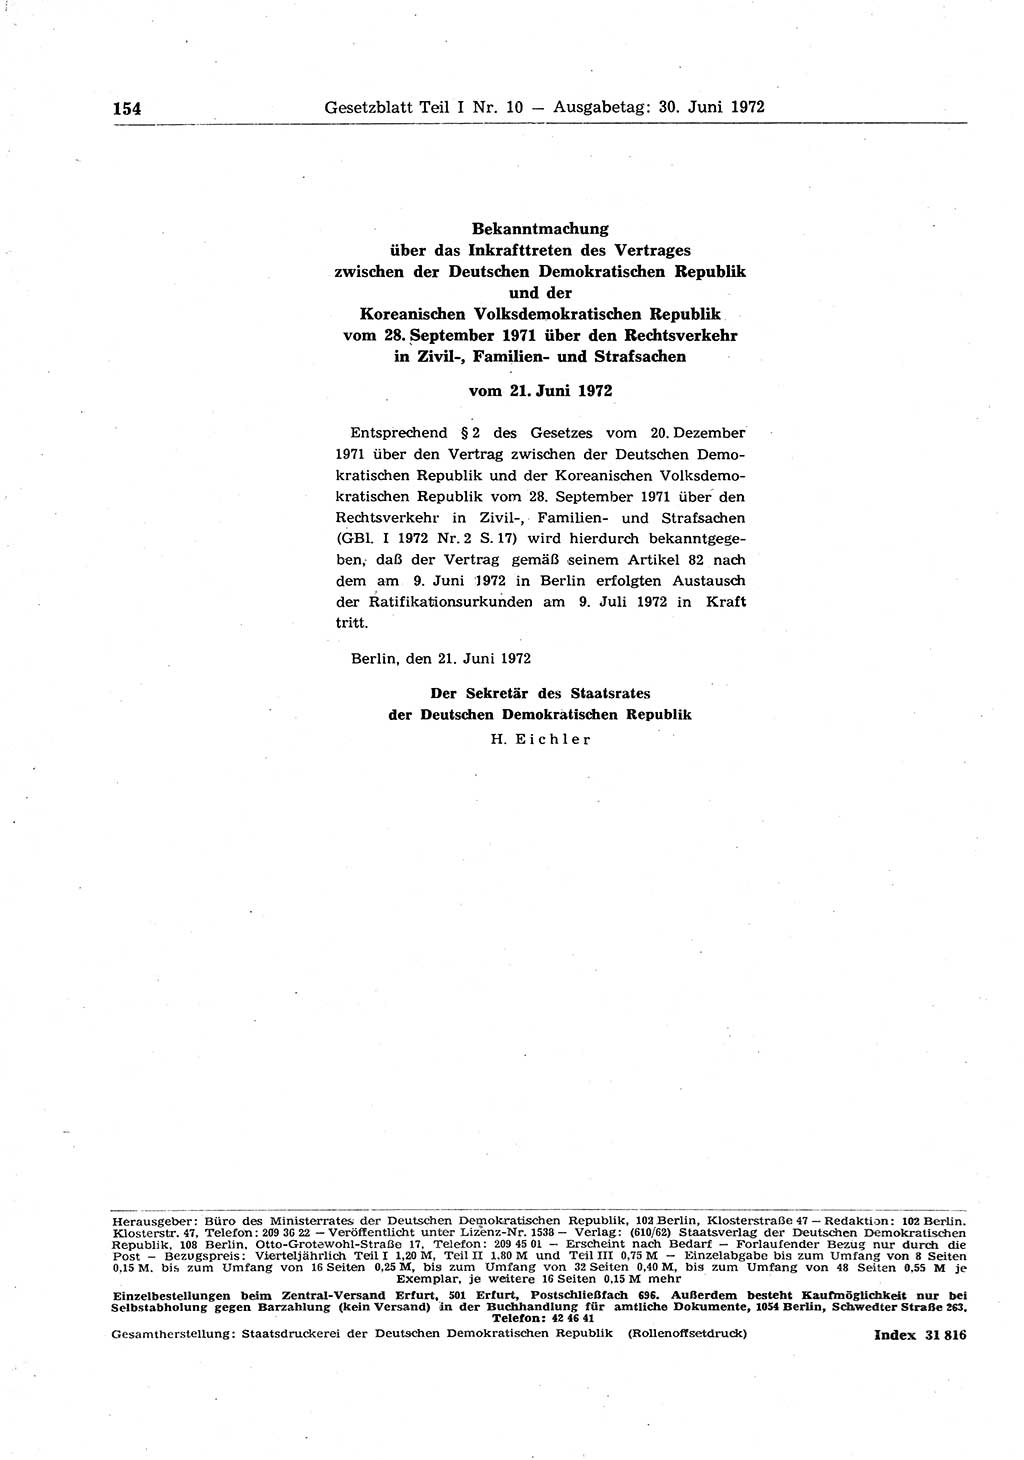 Gesetzblatt (GBl.) der Deutschen Demokratischen Republik (DDR) Teil Ⅰ 1972, Seite 154 (GBl. DDR Ⅰ 1972, S. 154)